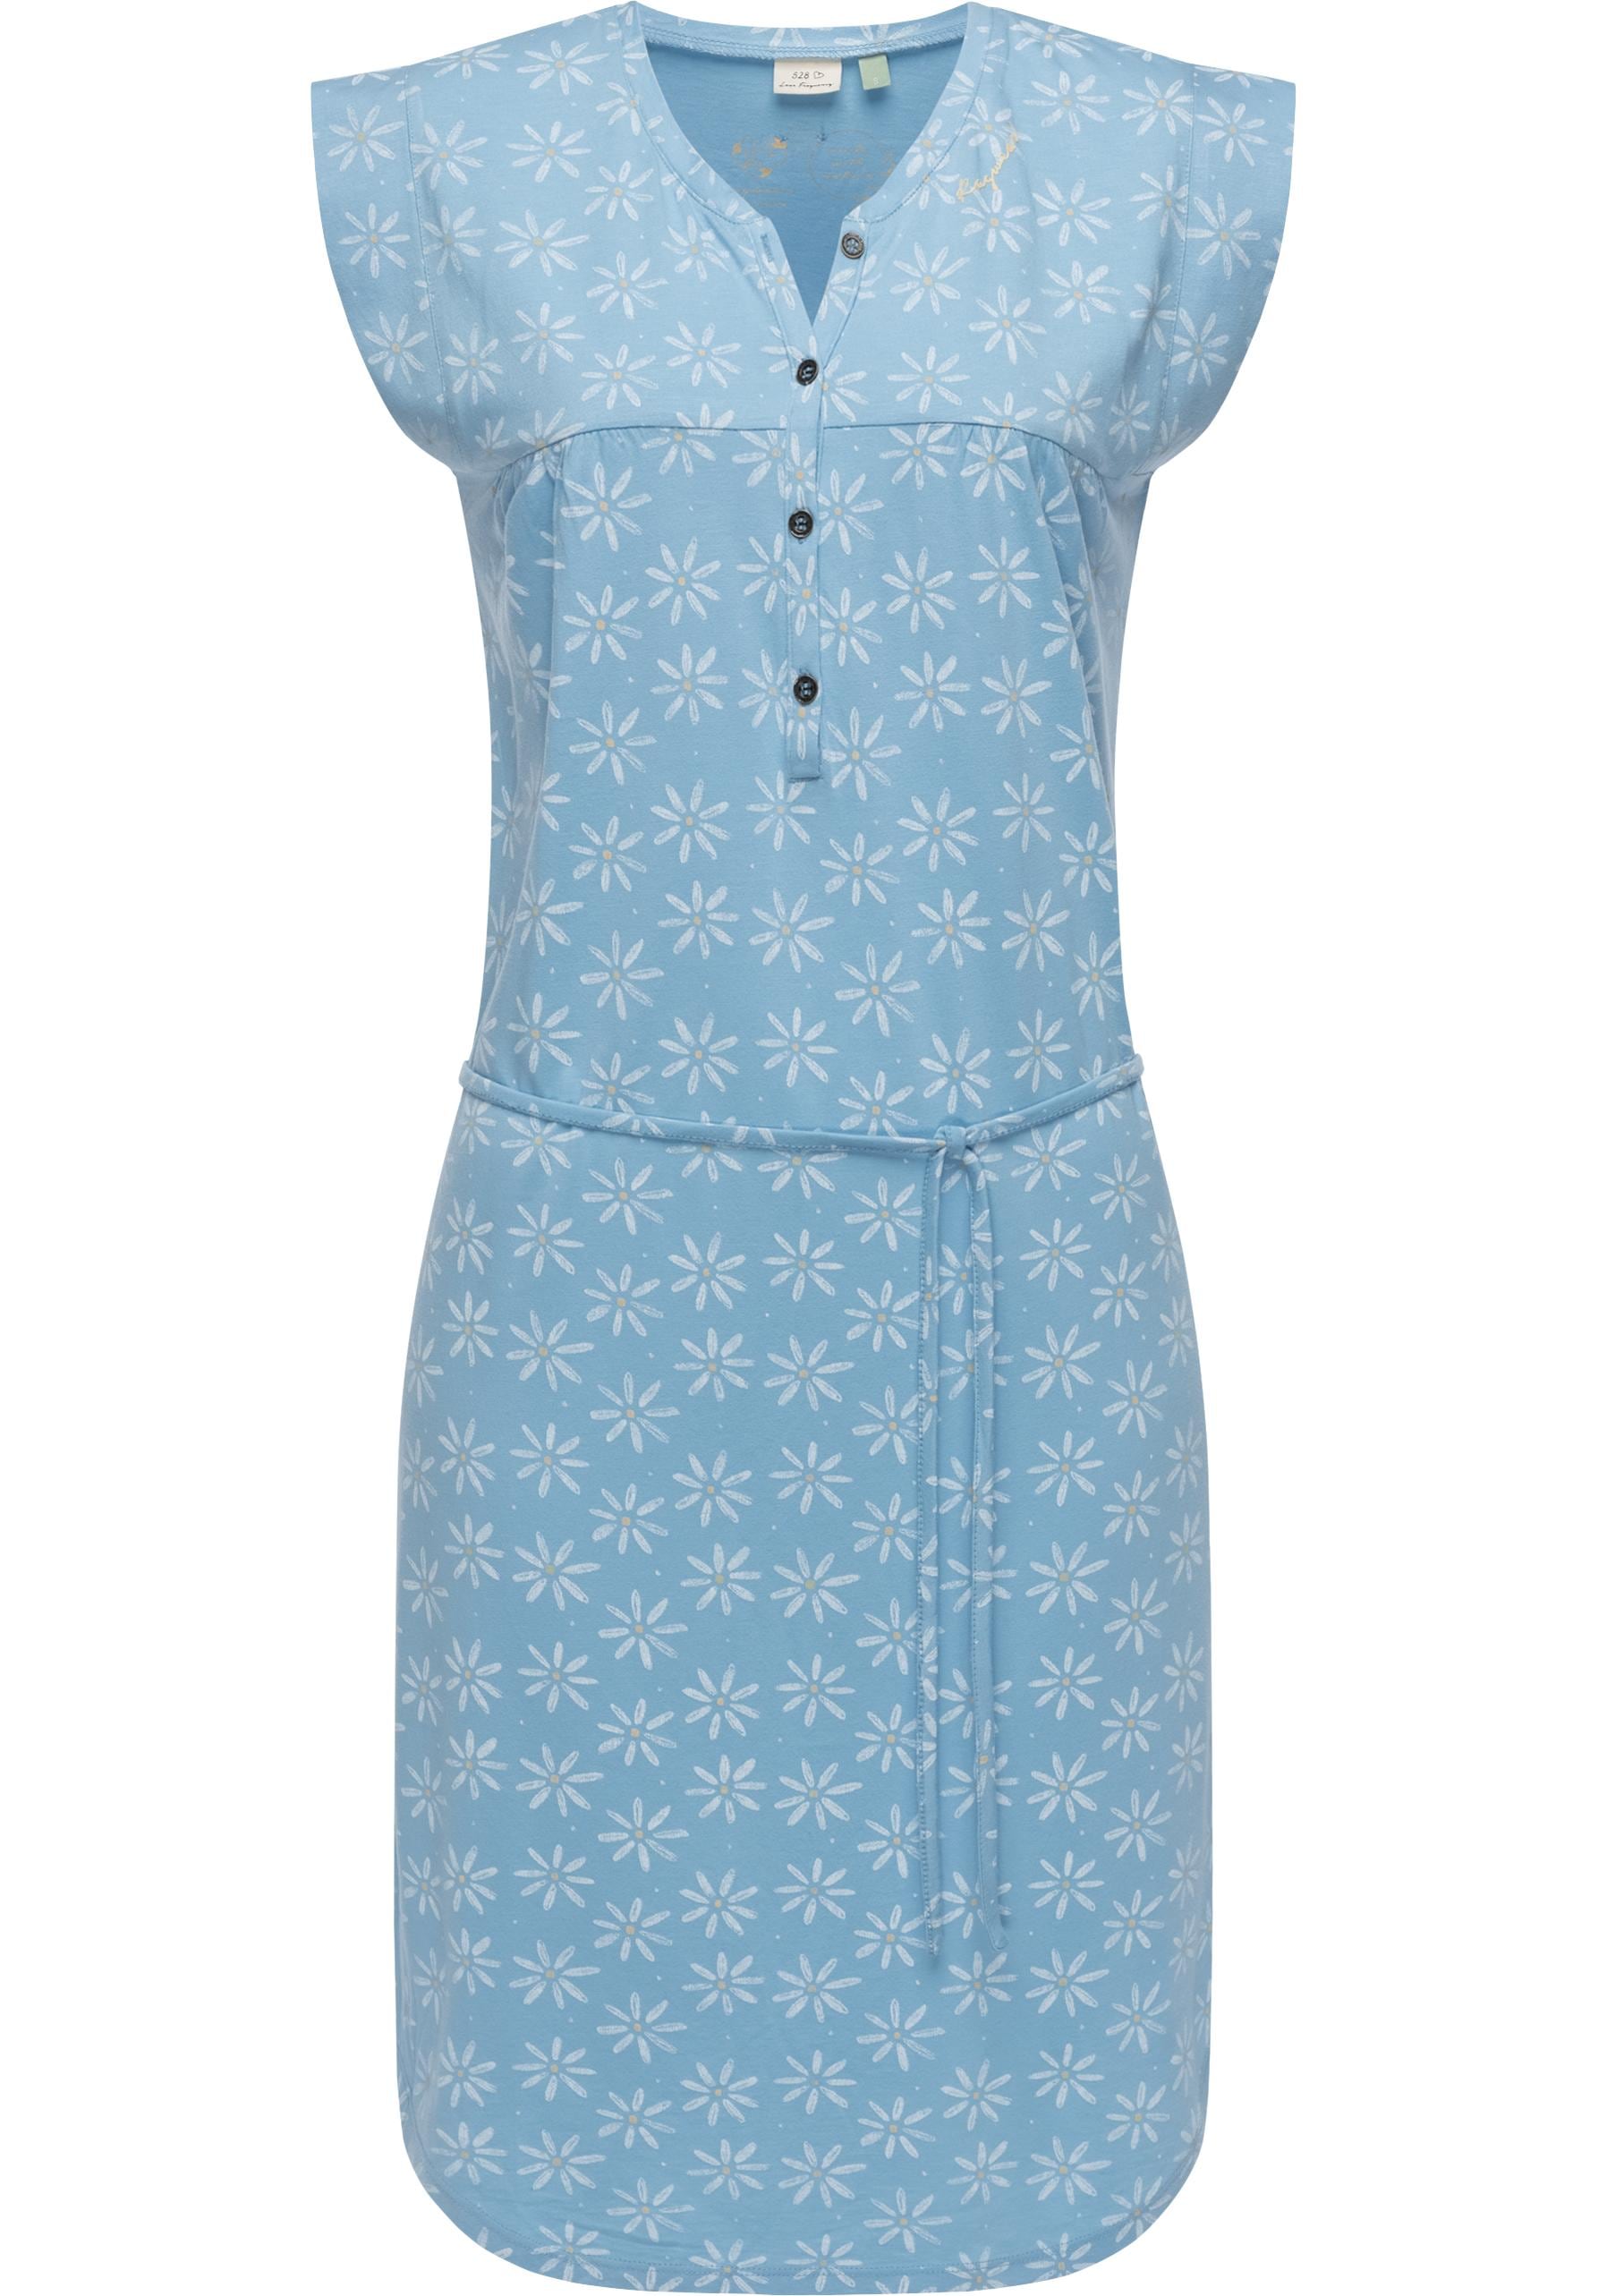 Sommerkleid »Zofka«, leichtes Jersey Kleid mit sommerlichem Print